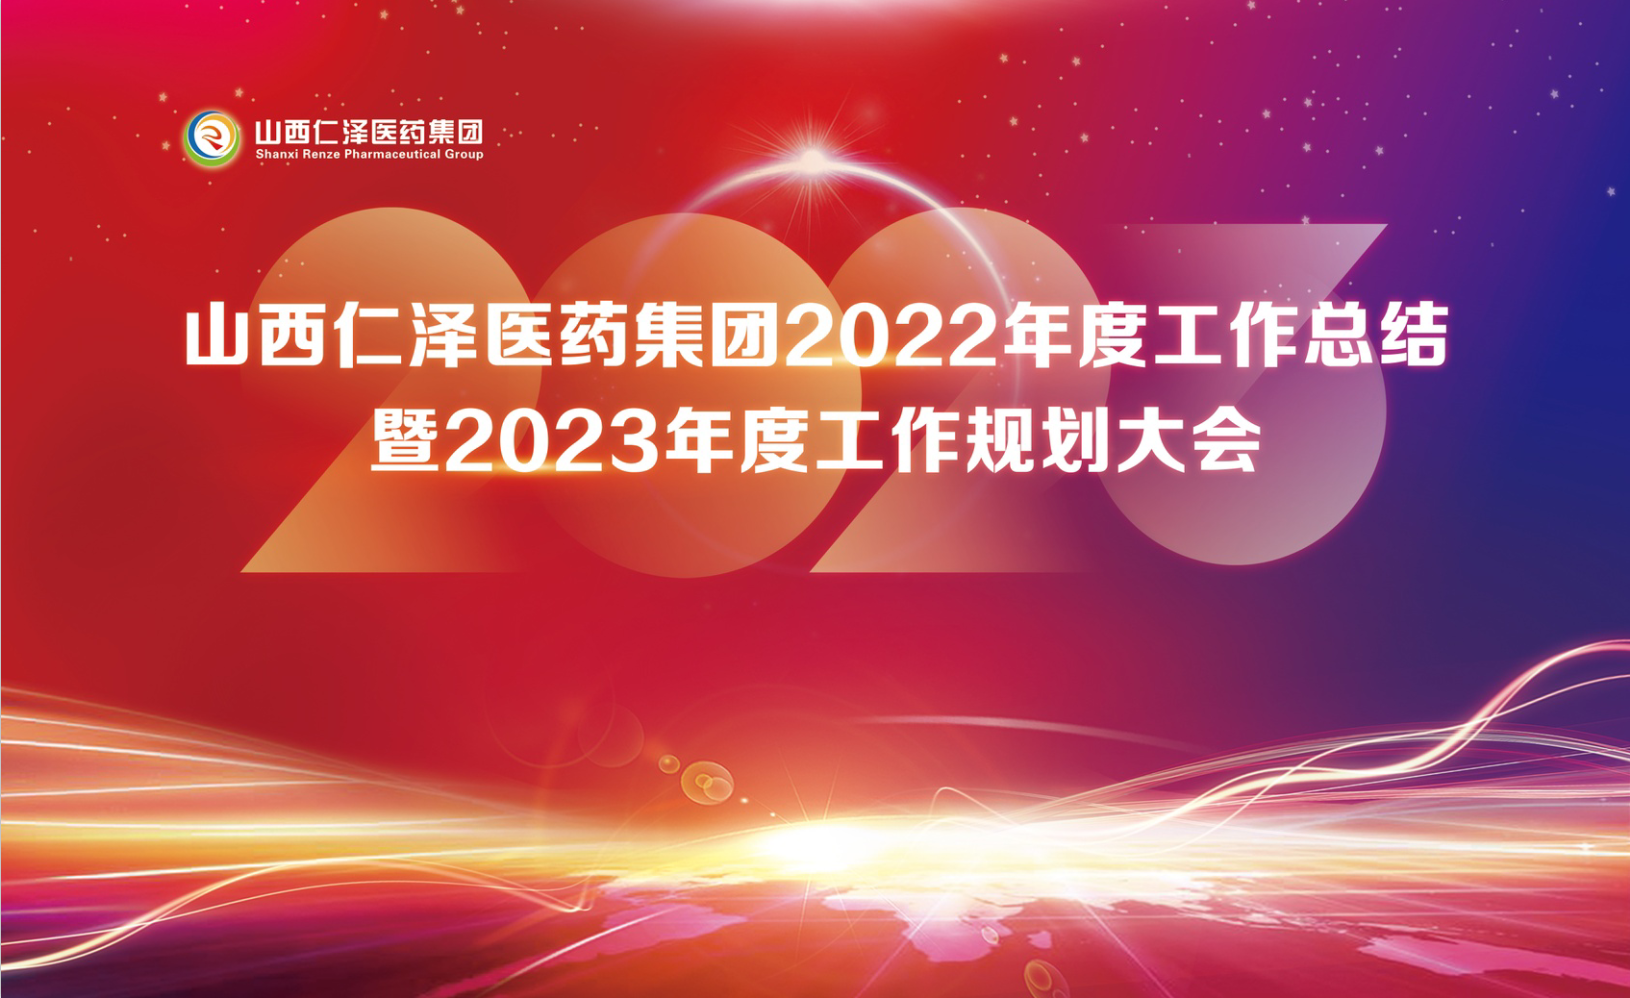 2022年度工作总结暨2023年度工作规划大会圆满结束